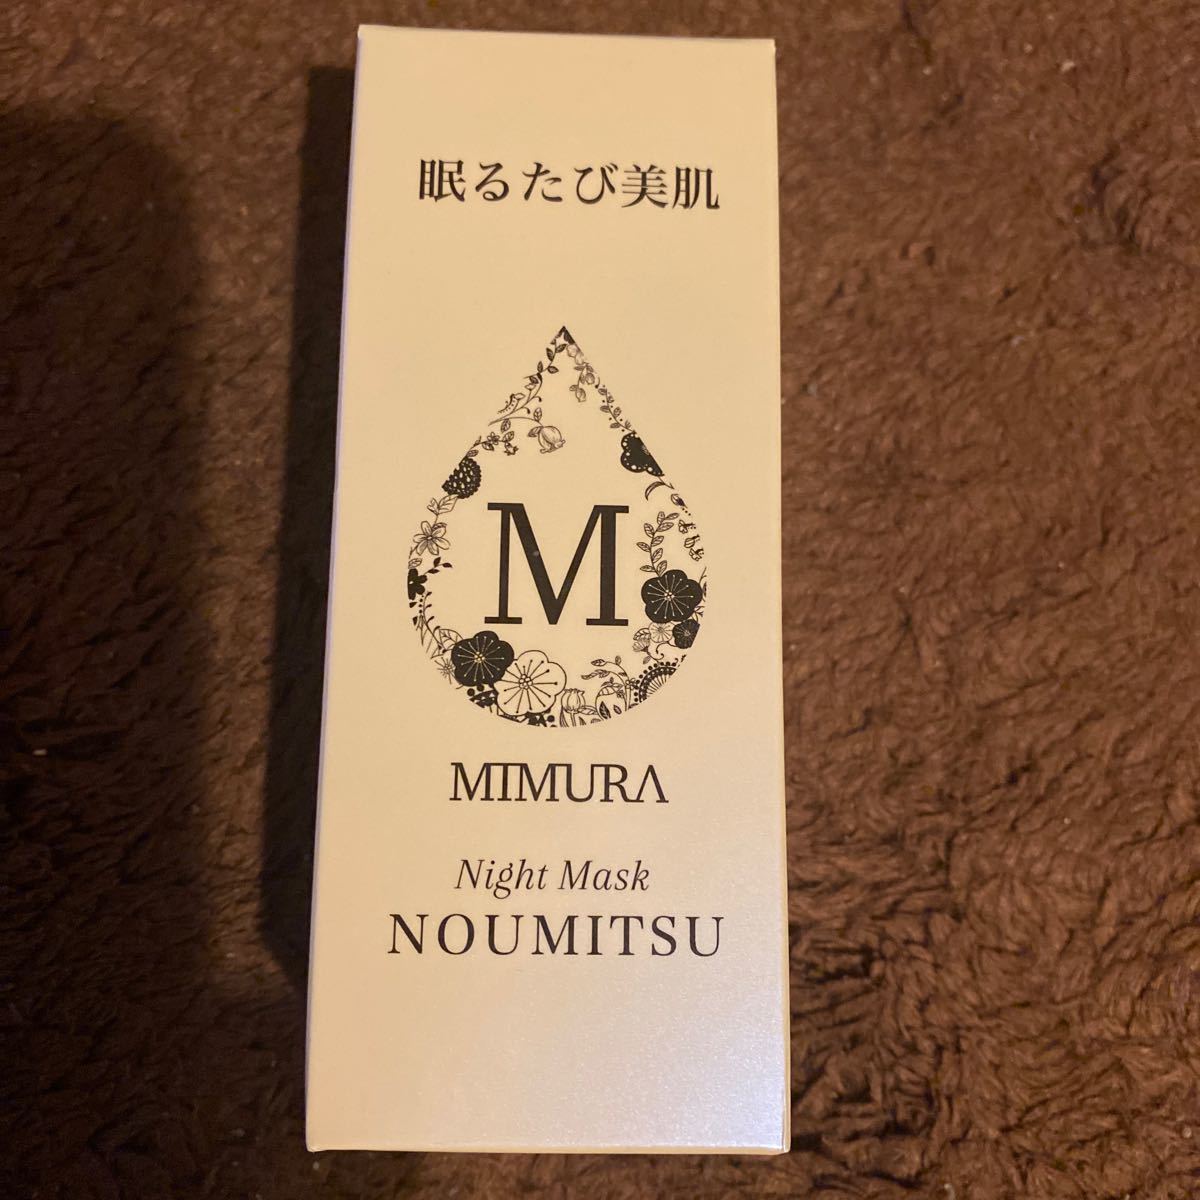 ナイトクリーム スリーピングマスク うるおい 保湿 クリーム 乾燥肌 ミムラ ナイトマスク NOUMITSU 48g 